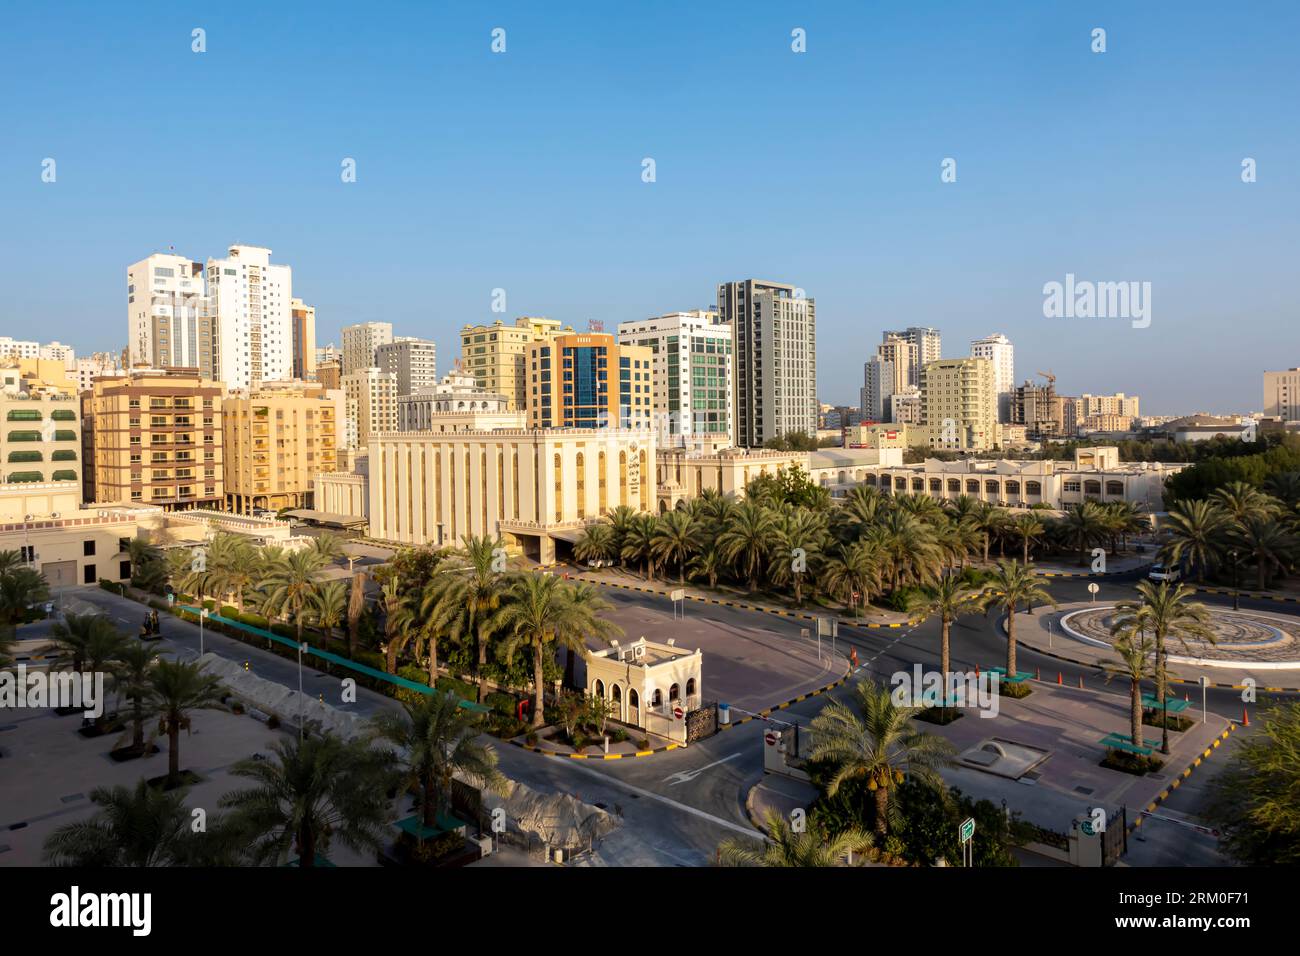 Das Gebäude des Obersten Rates für islamische Angelegenheiten - Regierungsbüro in Manama, Bahrain Stockfoto